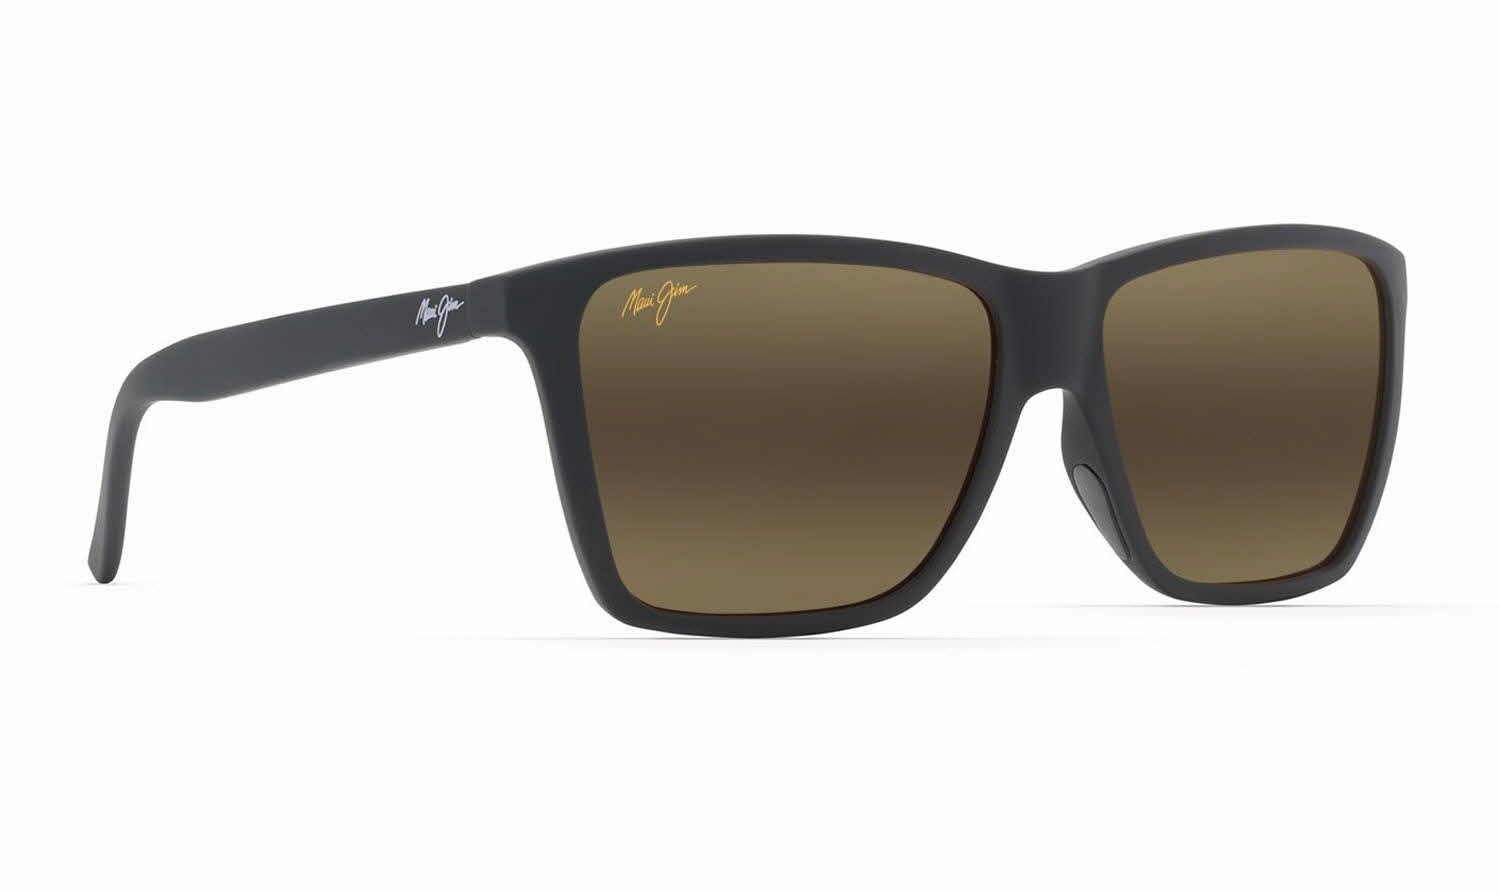 Maui Jim Cruzem-864 Prescription Sunglasses | FramesDirect.com